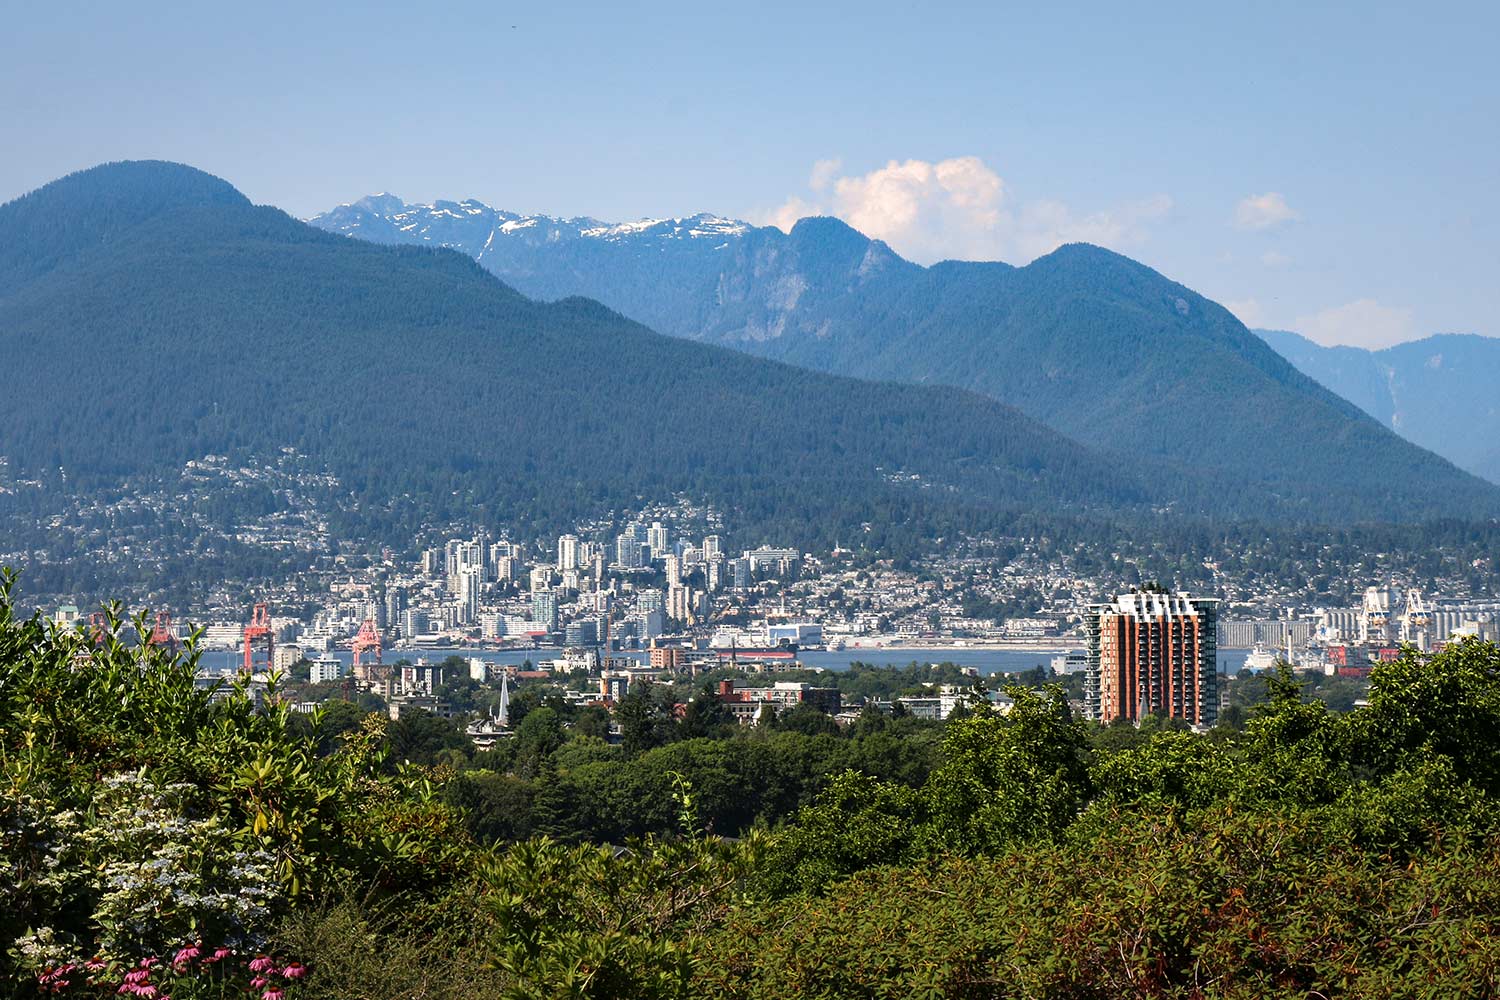 Vue depuis le Parc Reine Elizabeth, Vancouver, Colombie-Britannique, Canada / View from Queen Elizabeth Park, Vancouver, BC, Canada